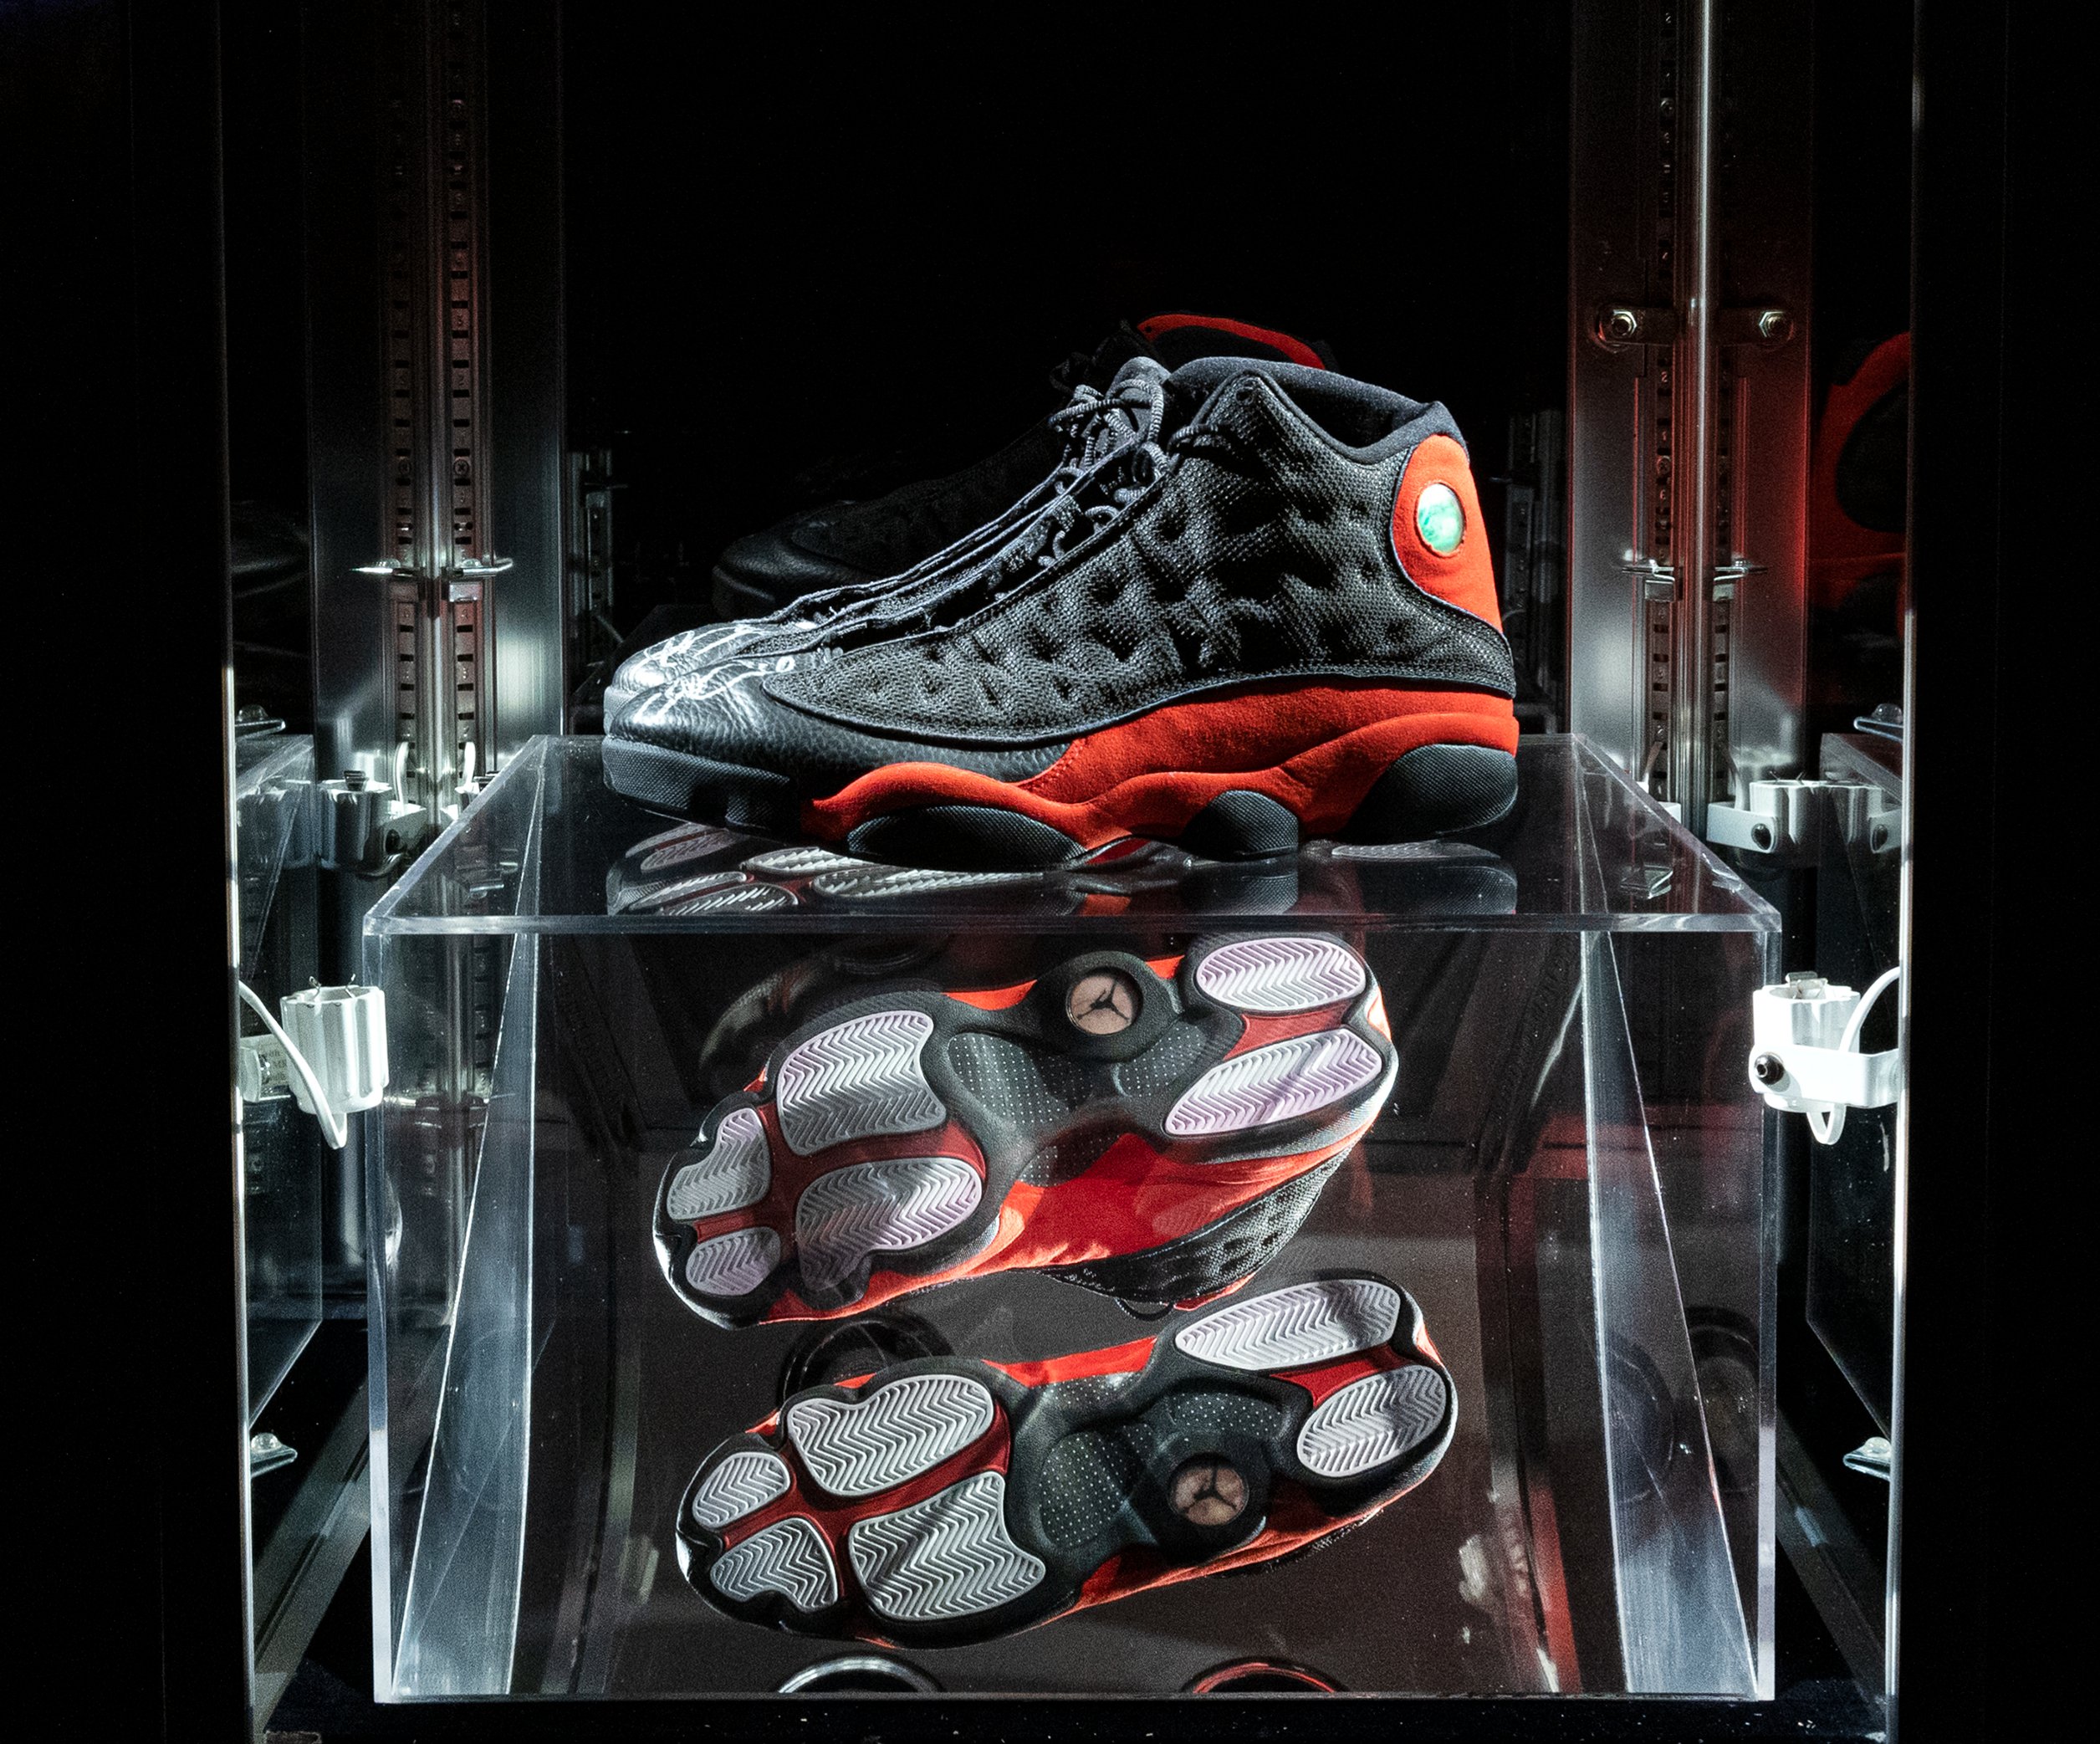 Michael Jordan'ın "Son Dans" ayakkabıları 2,2 milyon dolara satıldı